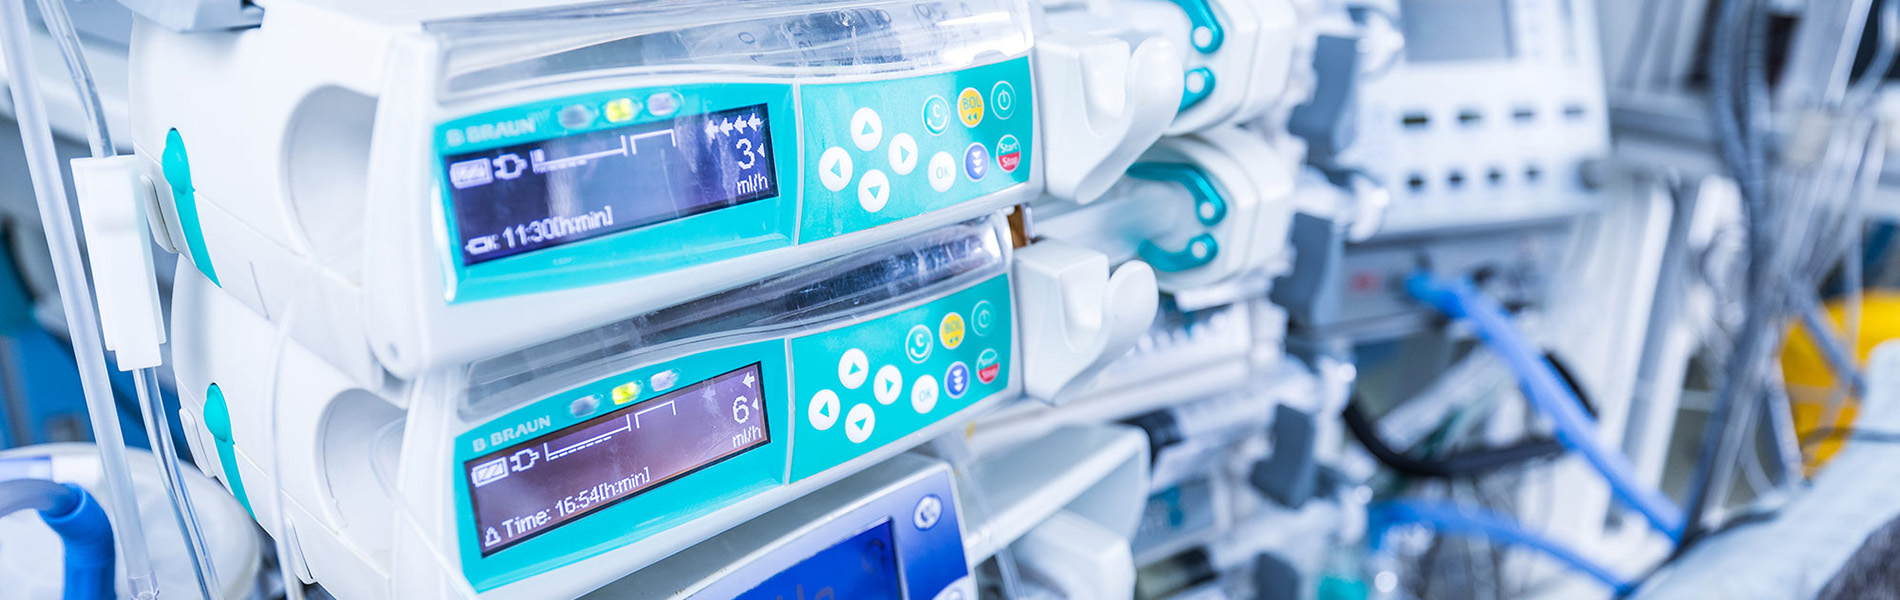 Nahaufnahme von medizinischen Infusionspumpen mit digitalen Steuerungspanels im Krankenhaus